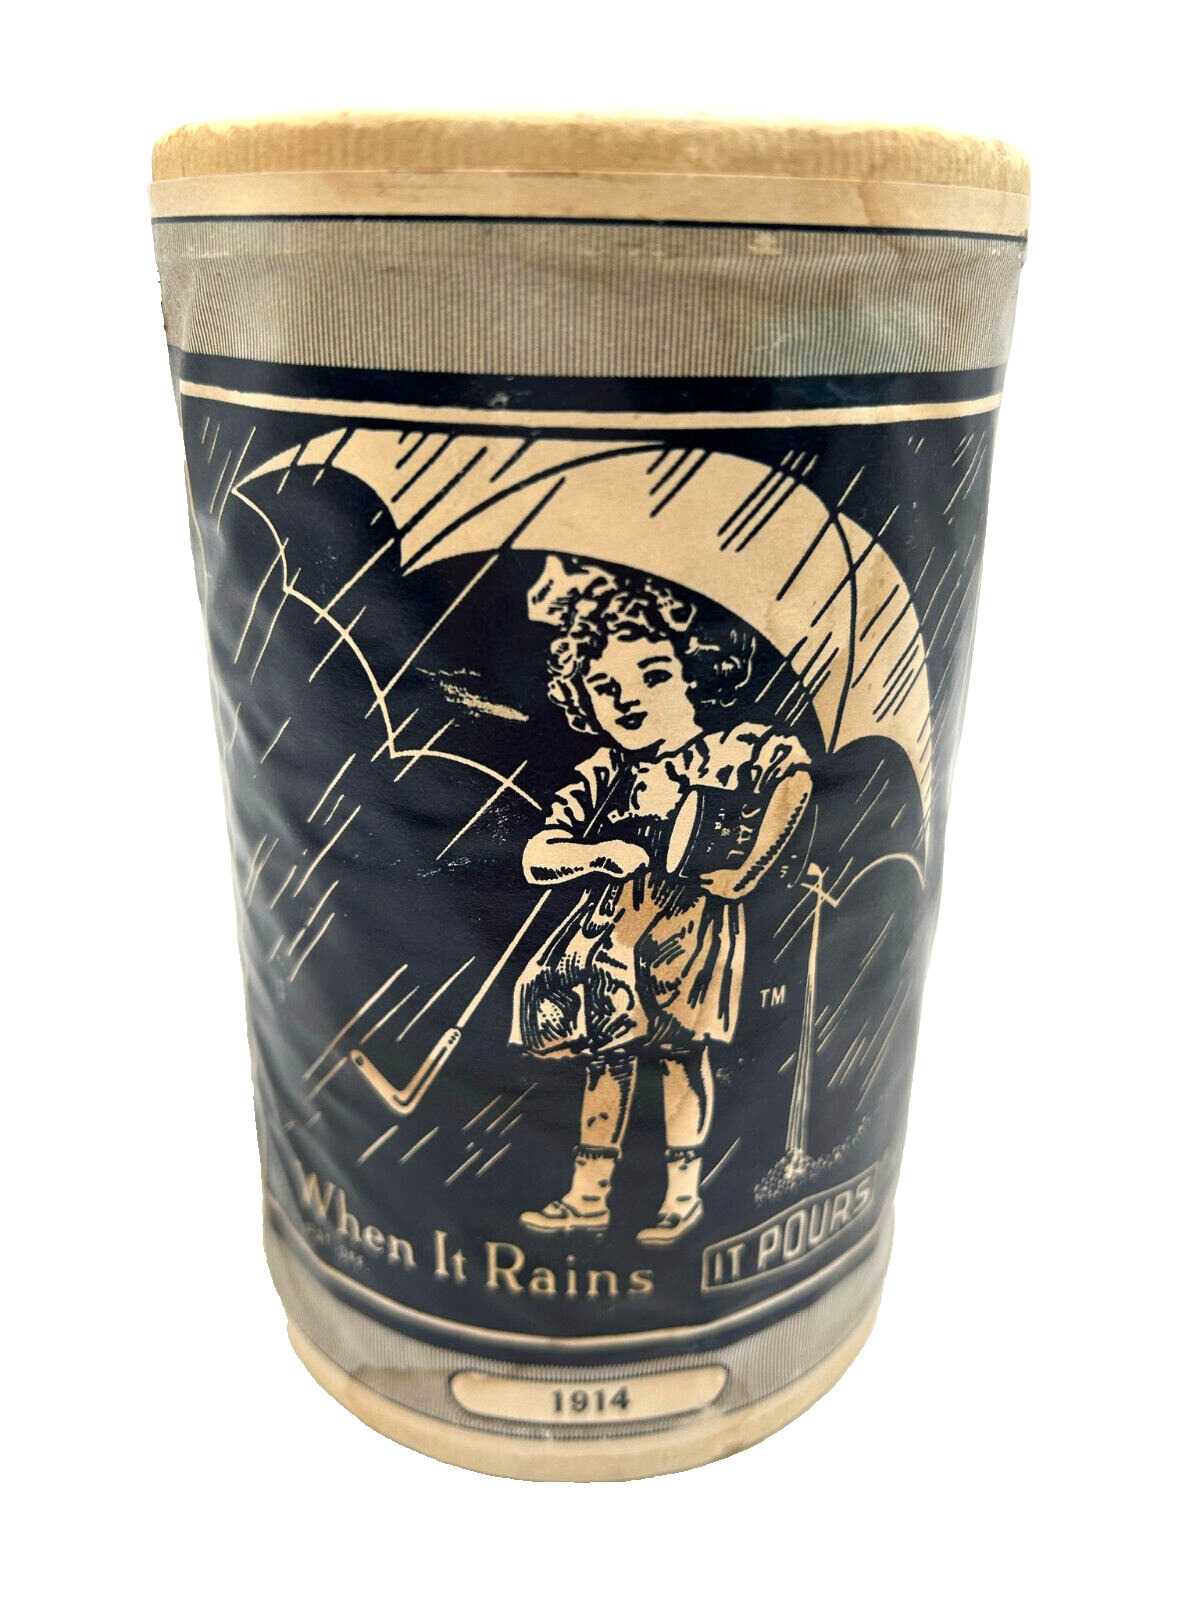 Morton Iodized Salt Cardboard Container 1914 When It Rains It Pours Morton Girl